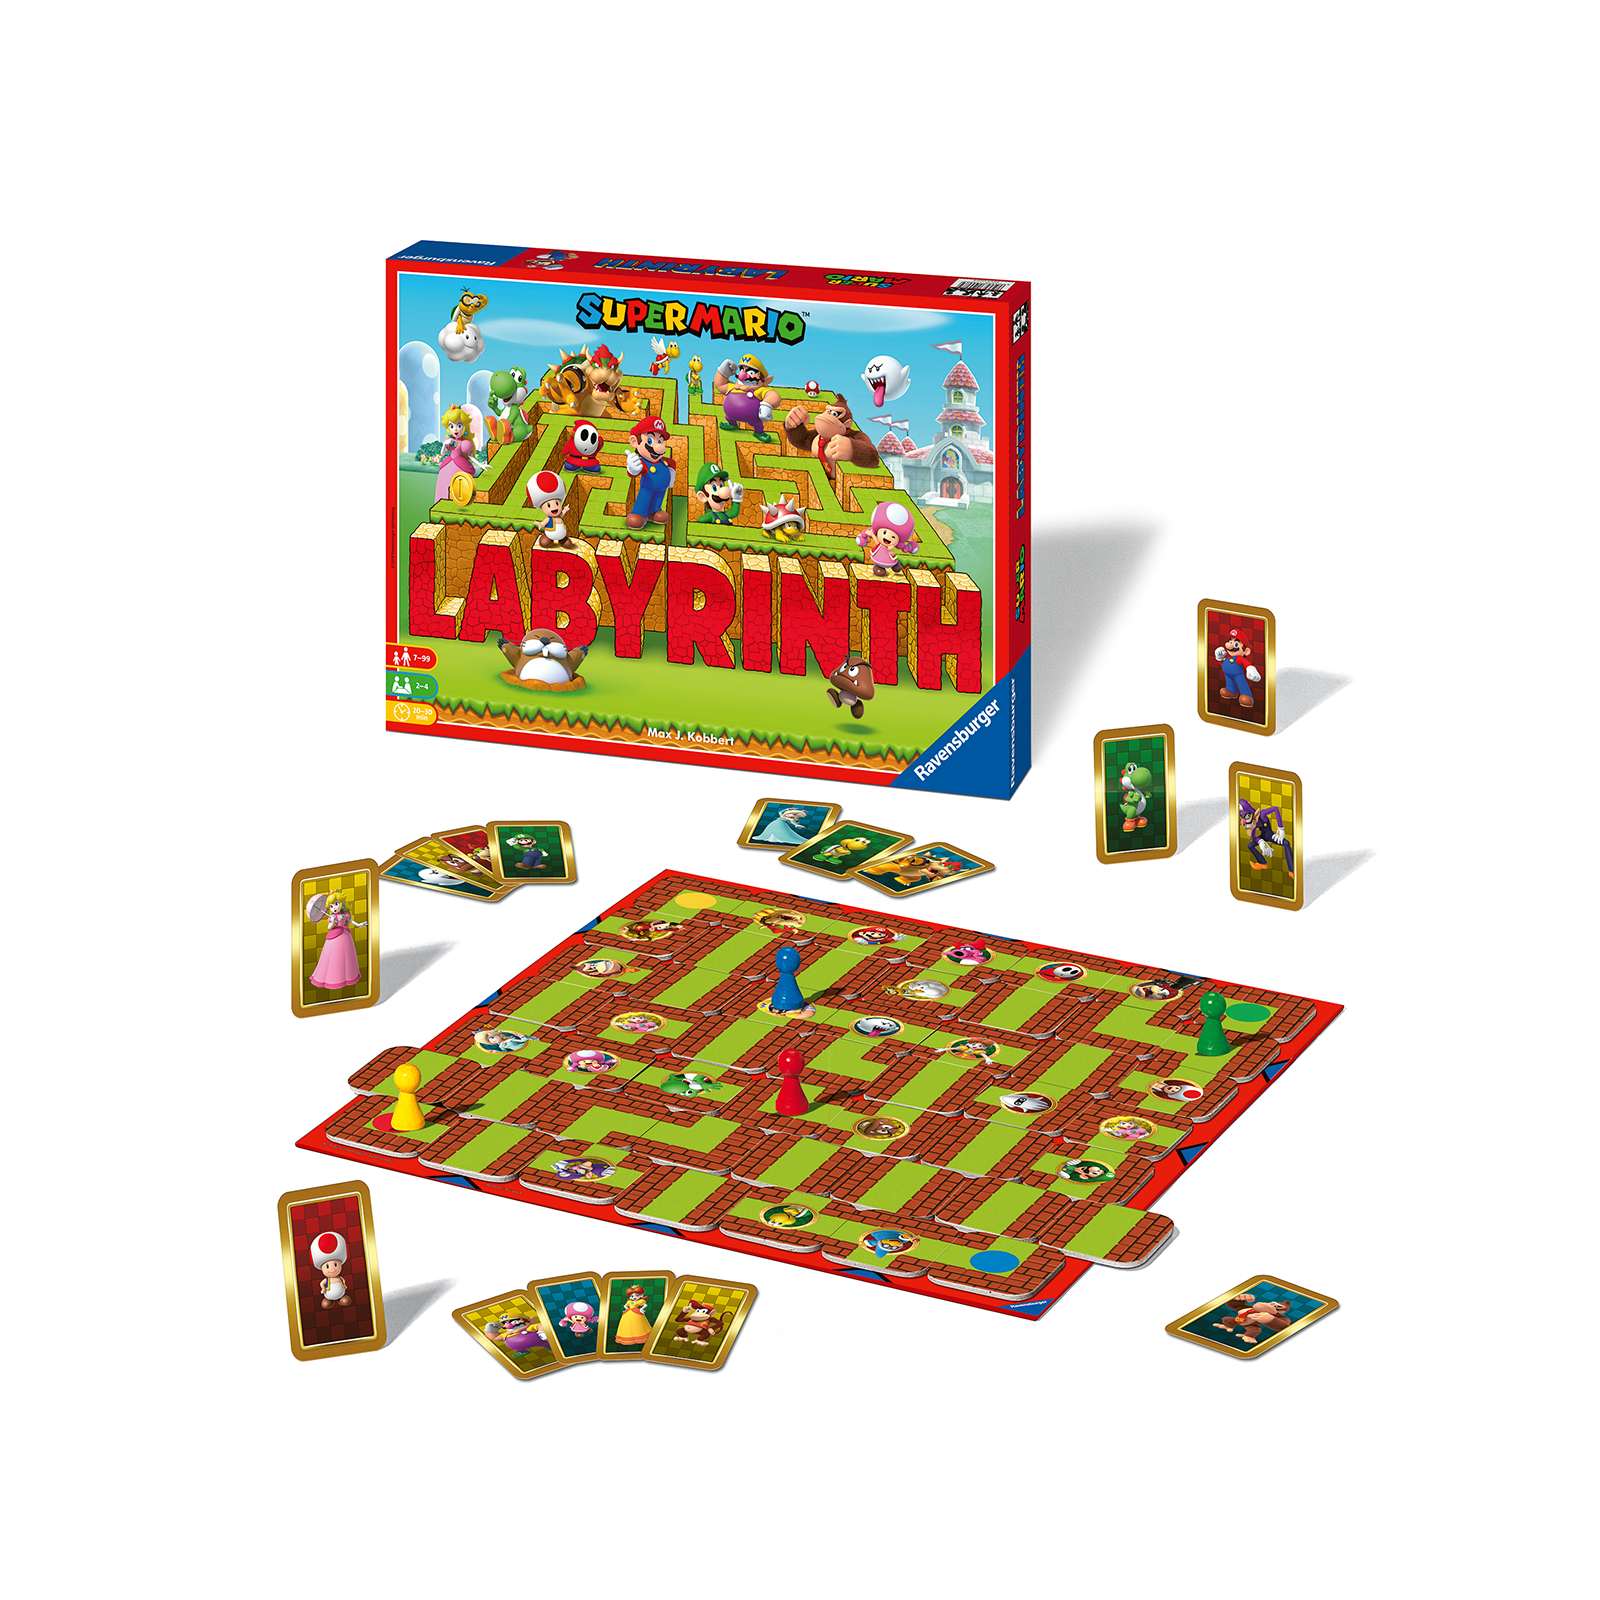 Ravensburger - labirinto magico super mario, gioco da tavolo, da 2 a 4 giocatori, 7+ anni - RAVENSBURGER, Super Mario